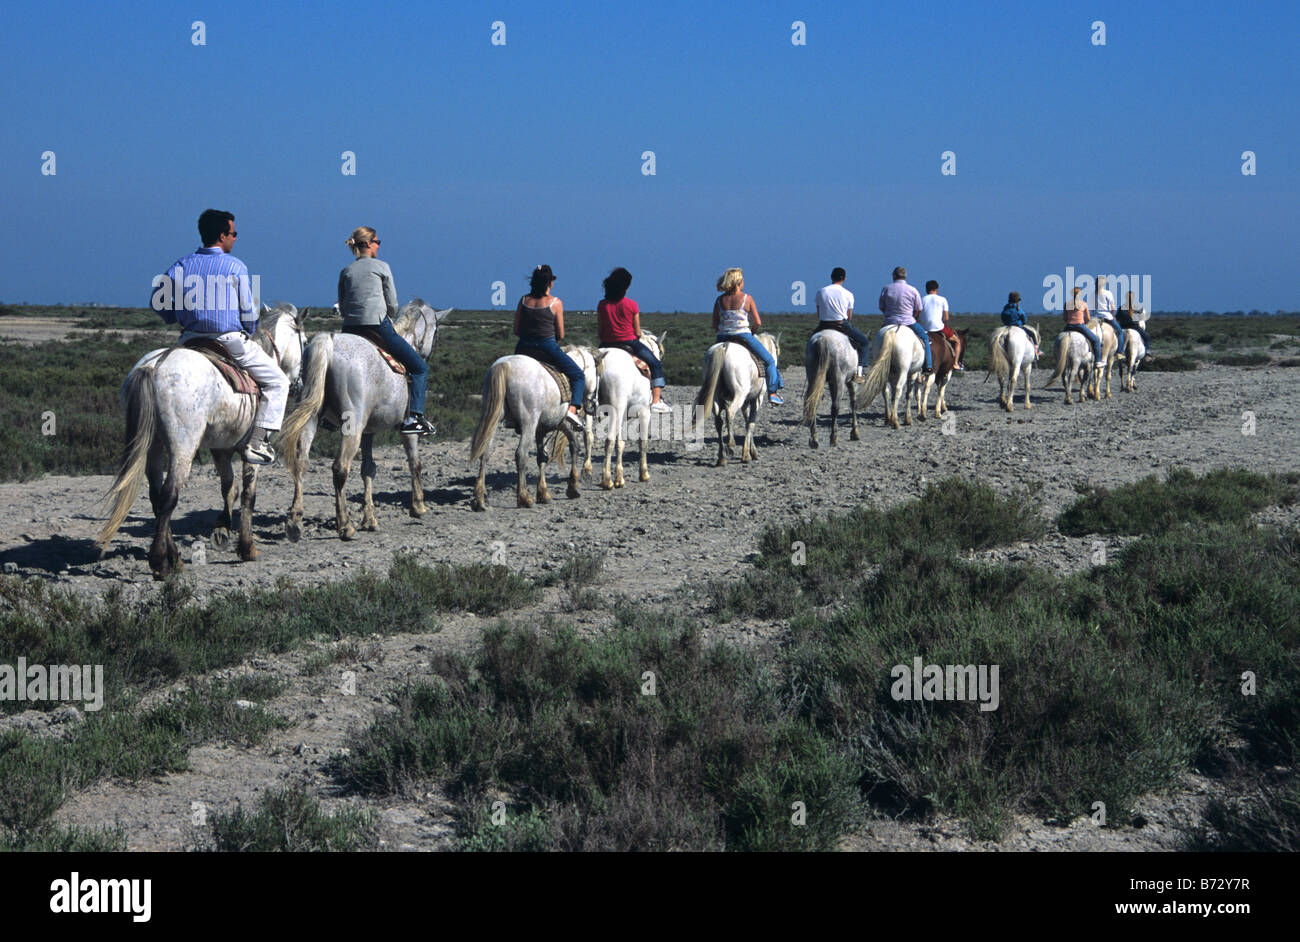 Equitation sur chevaux blancs le long des berges de l'étang (ou le lac) de Vaccarès, Camargue, Provence, France Banque D'Images